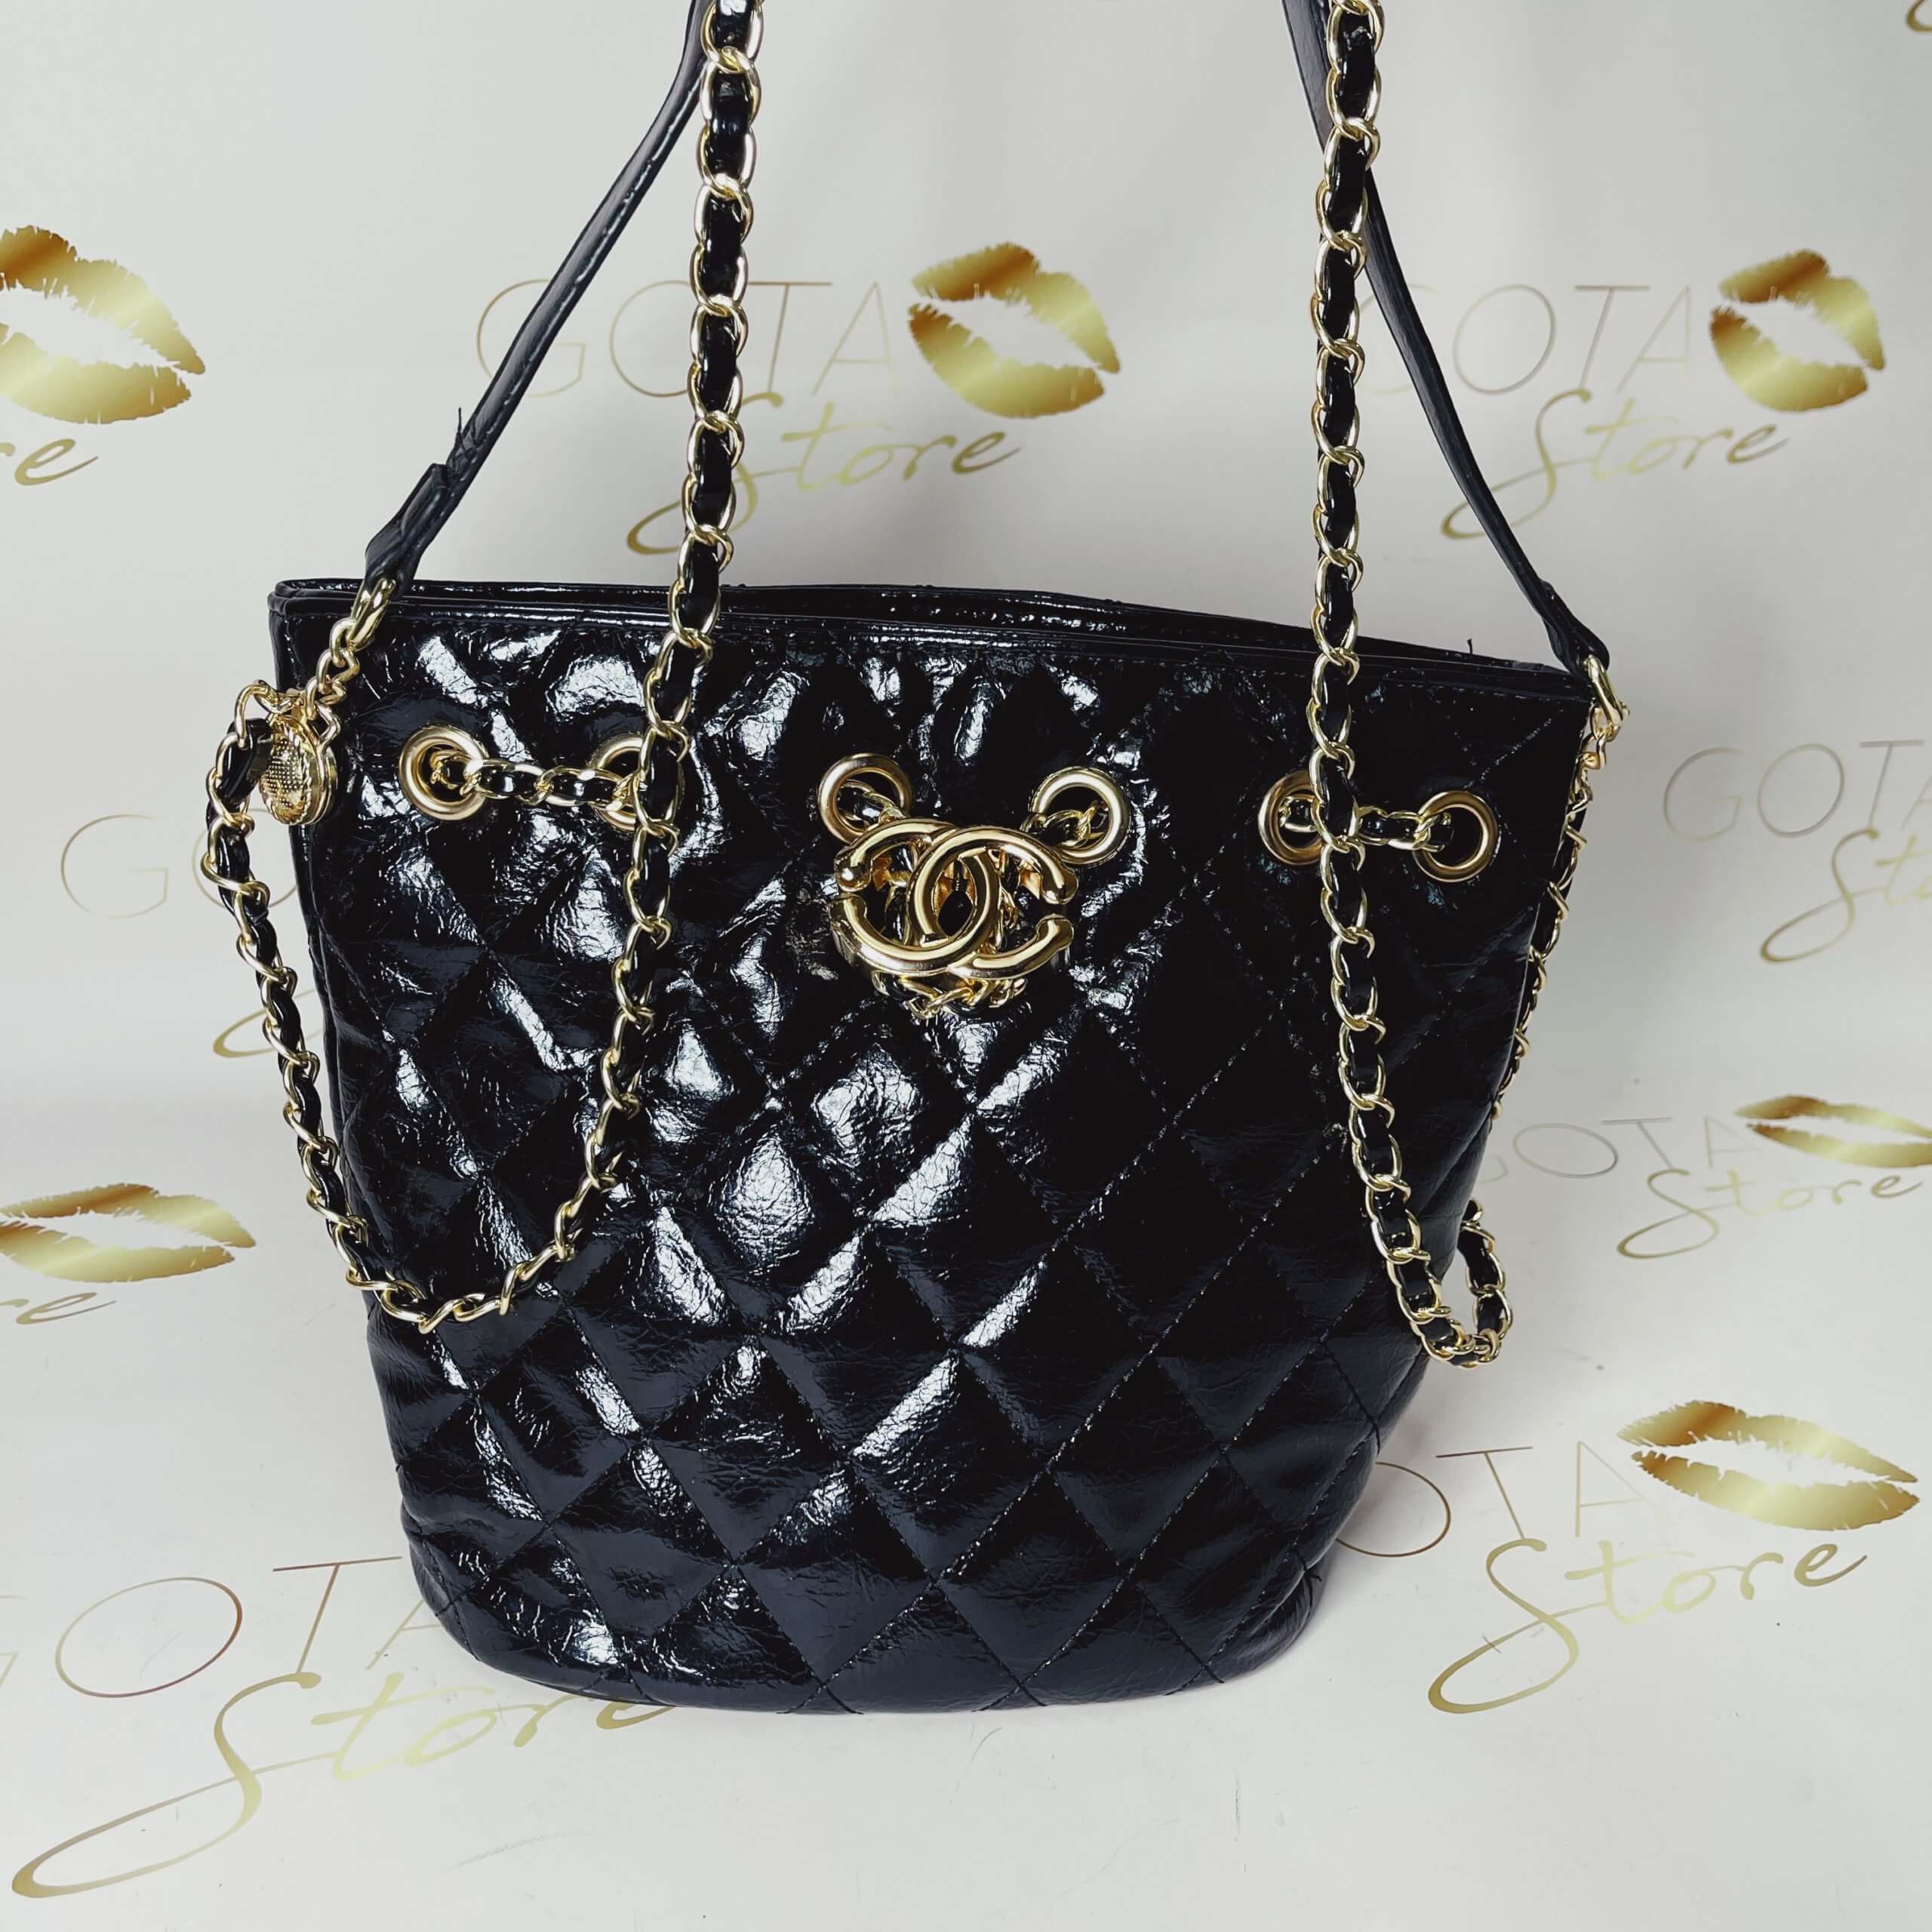 Mini Geldbörsen und Handtaschen für Frauen Crossbody Bag Totes Handtaschen Color : Crocodile Black, Size : 12x10x5 cm 